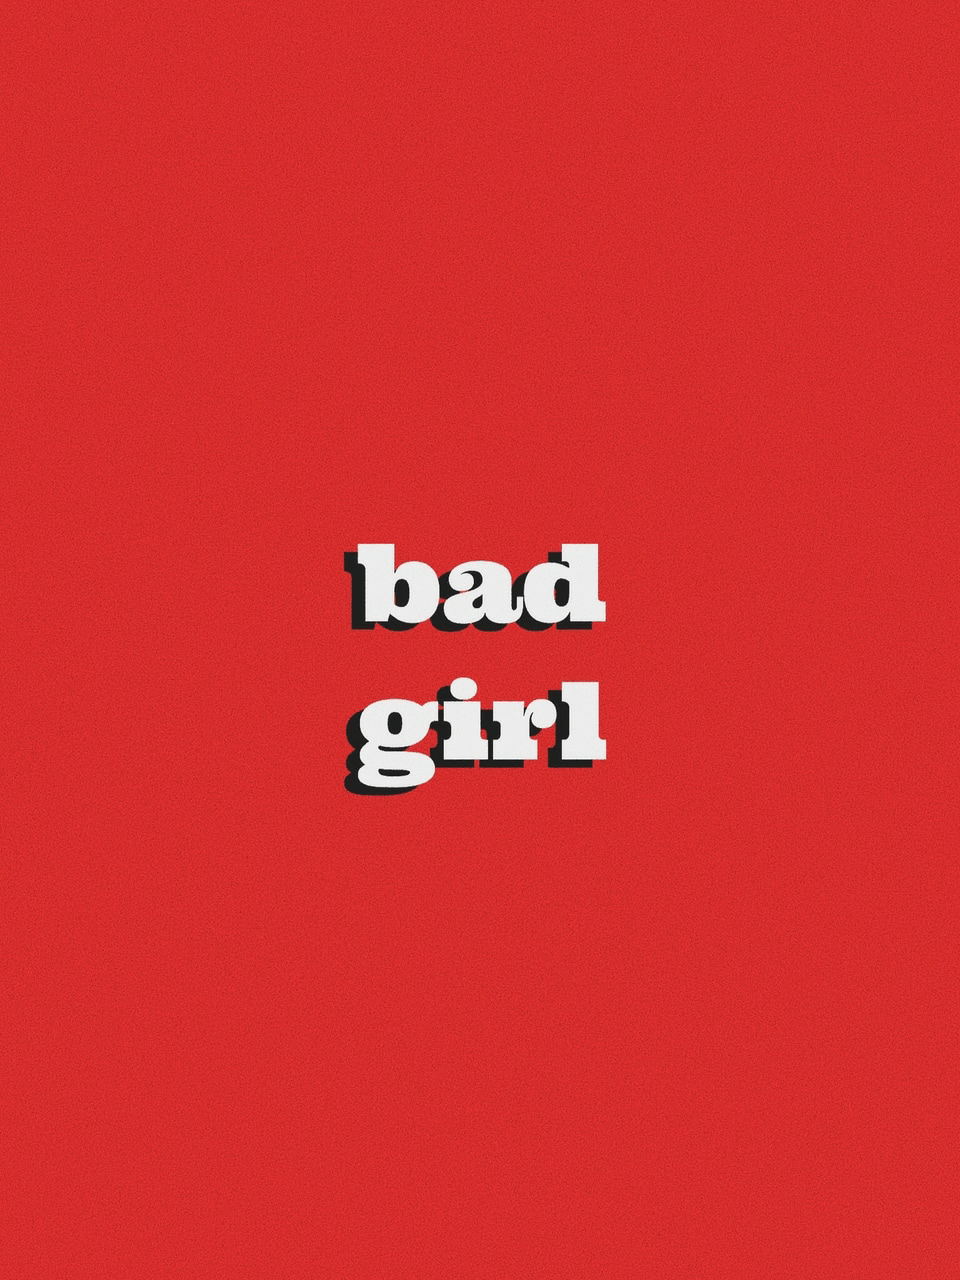 Bad Girl Aesthetic Wallpapers - Top Free Bad Girl Aesthetic Backgrounds